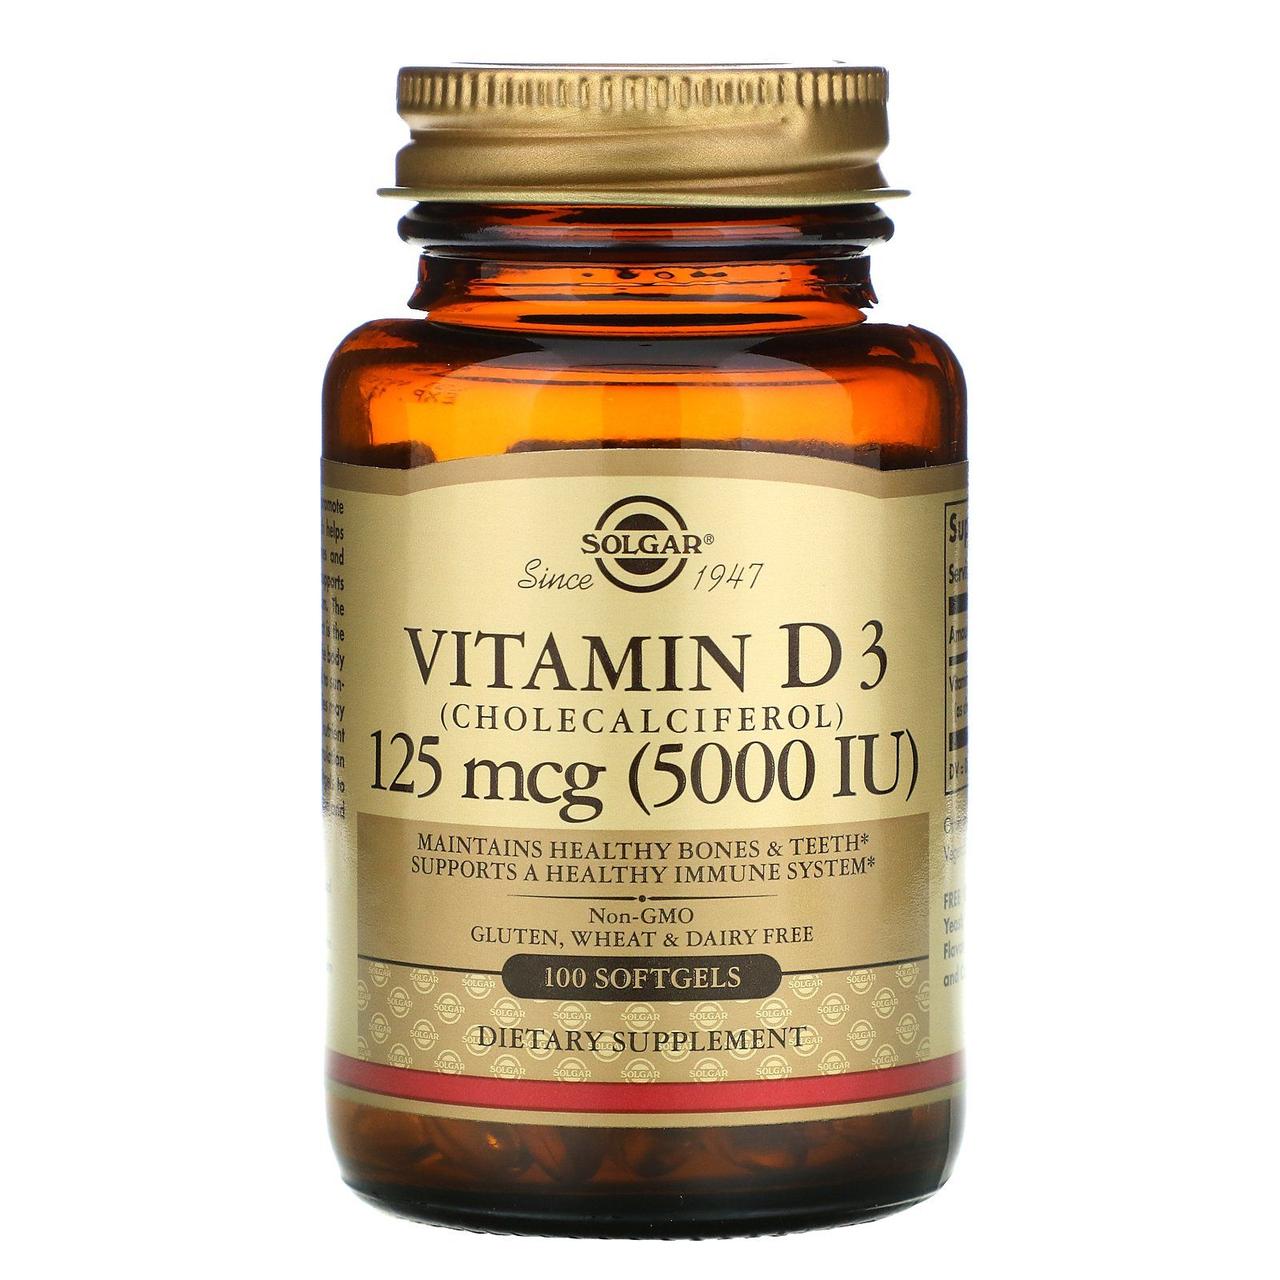 Solgar Vitamin D3 (Cholecalciferol) 125 mcg (5000 IU) 100 Softgels,  мл, Solgar. Витамины и минералы. Поддержание здоровья Укрепление иммунитета 